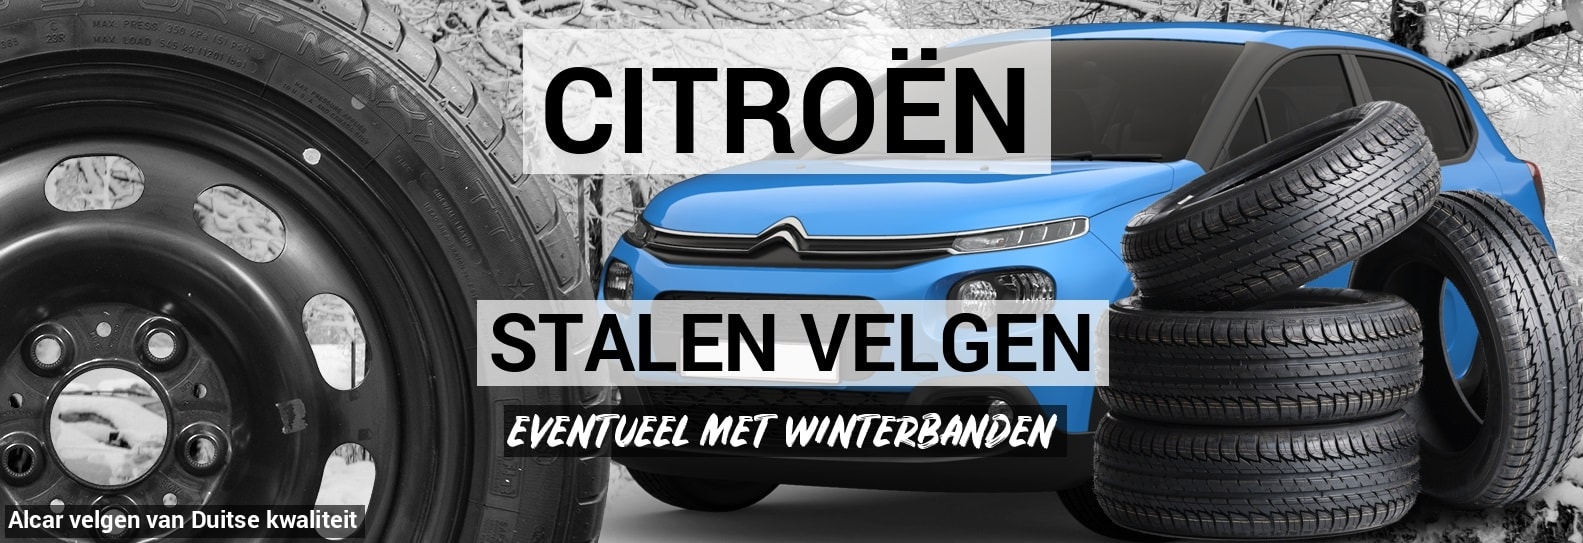 Citroën stalen velgen